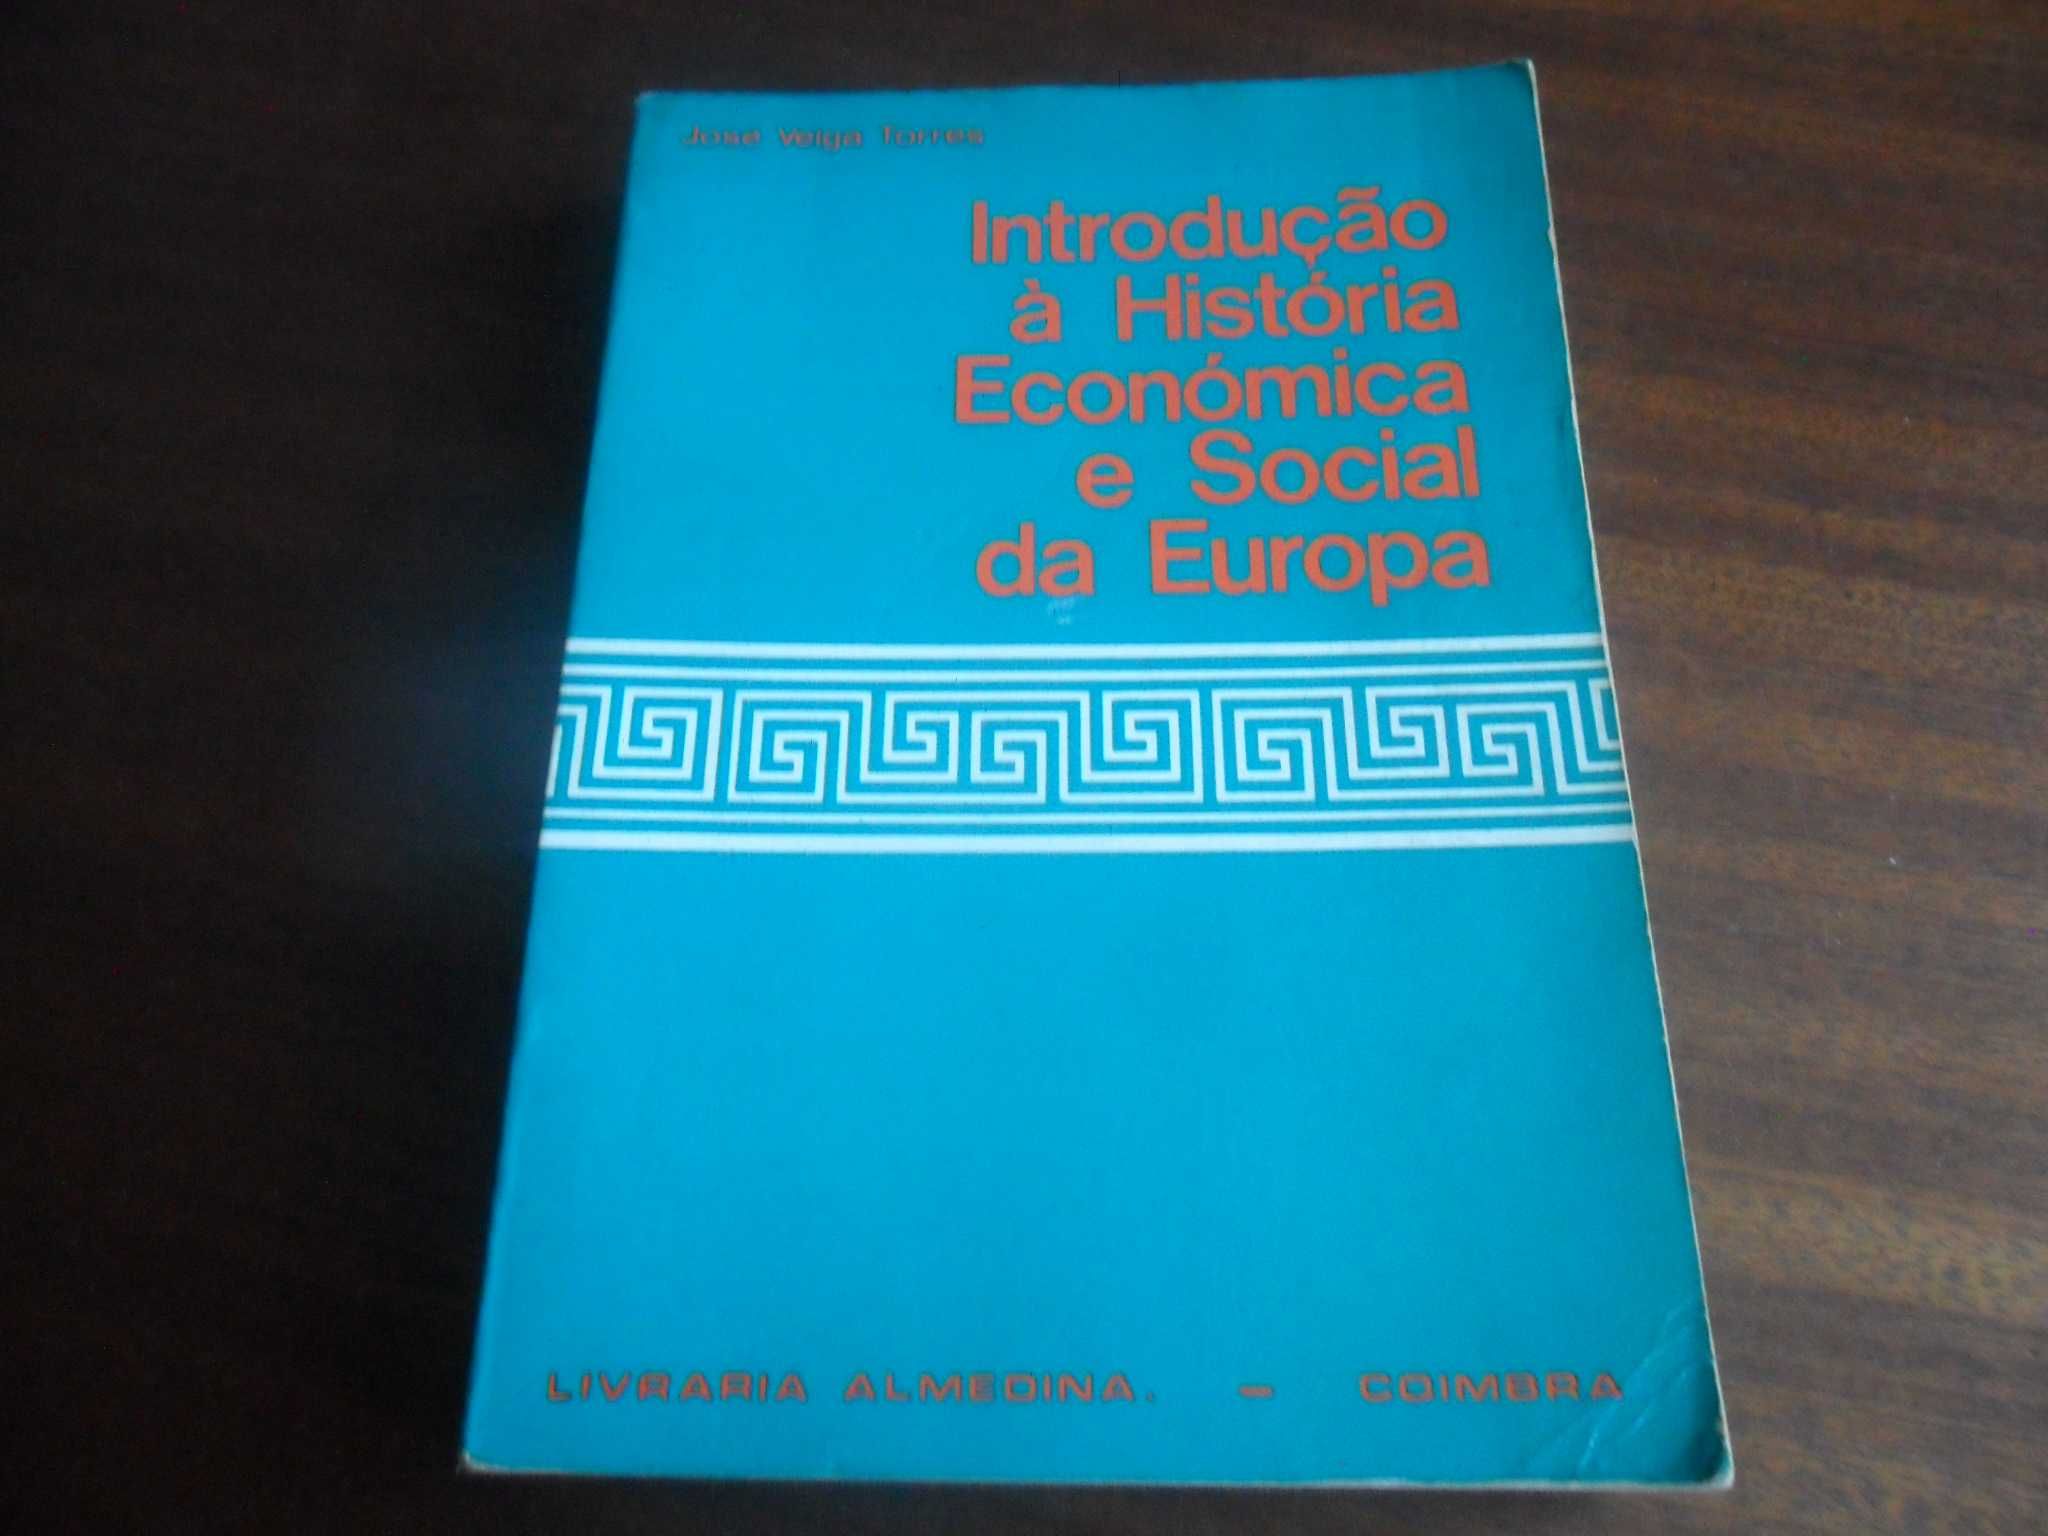 "Introdução à História Económica e Social da Europa" de J Veiga Torres